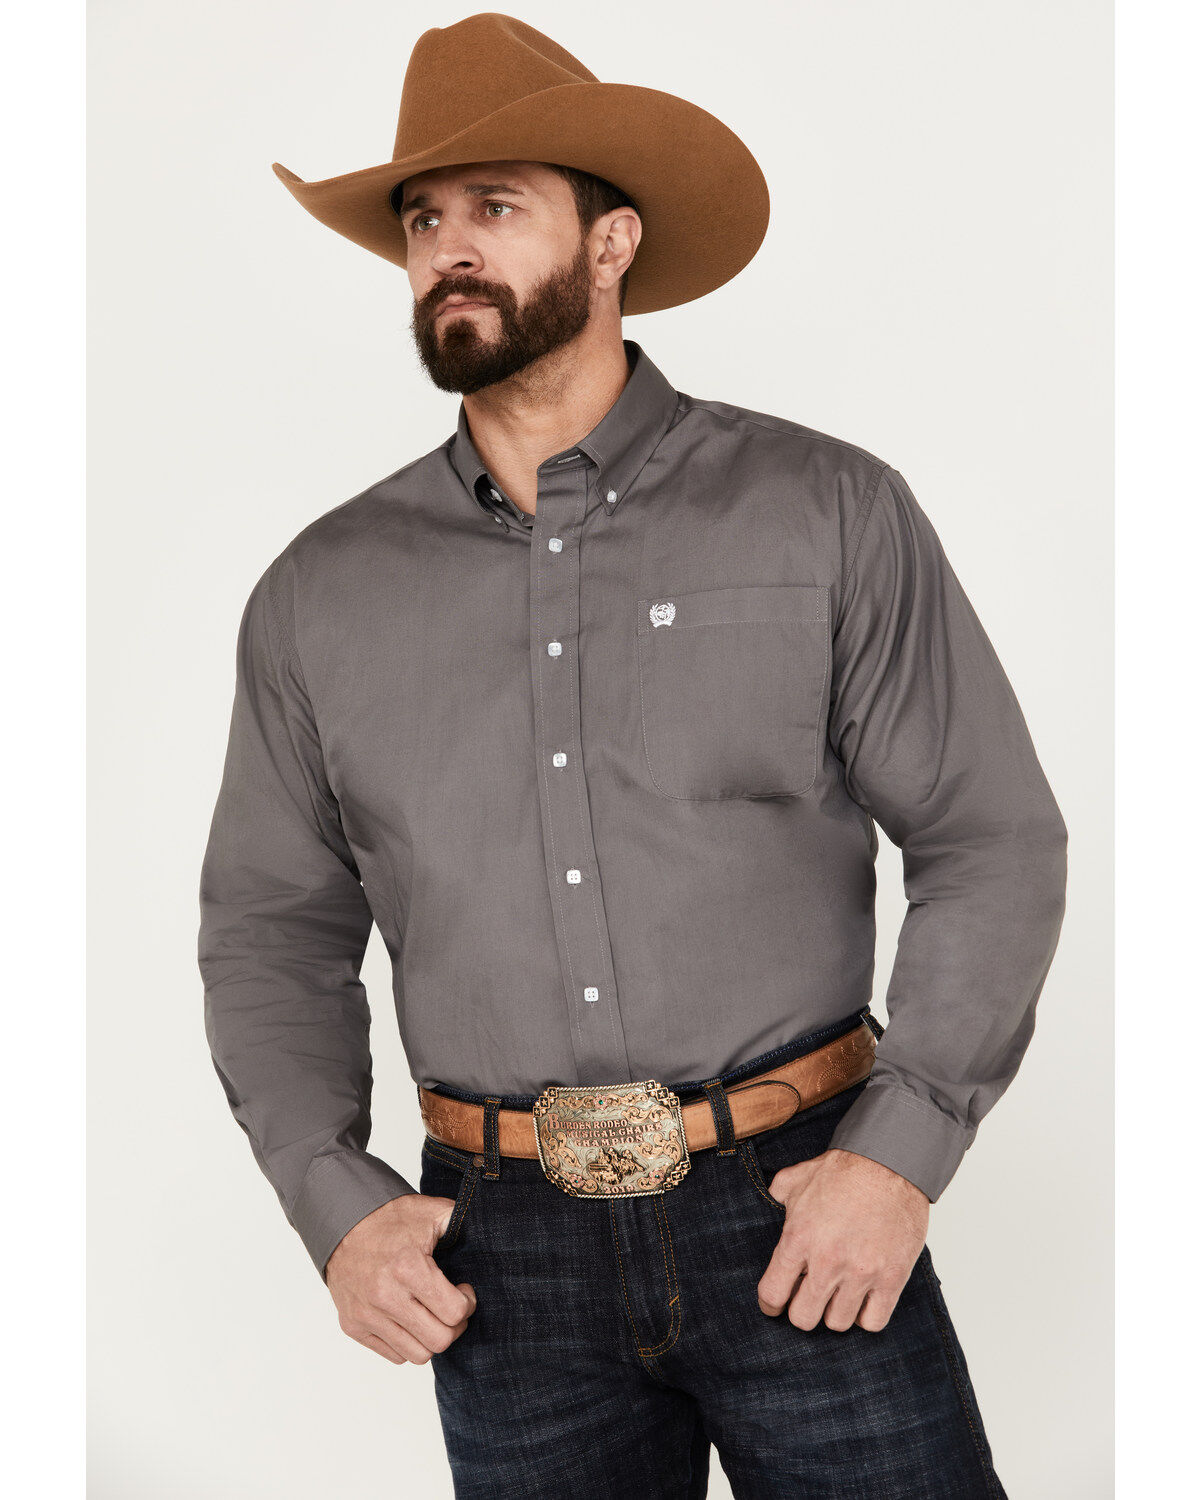 boot barn shirts